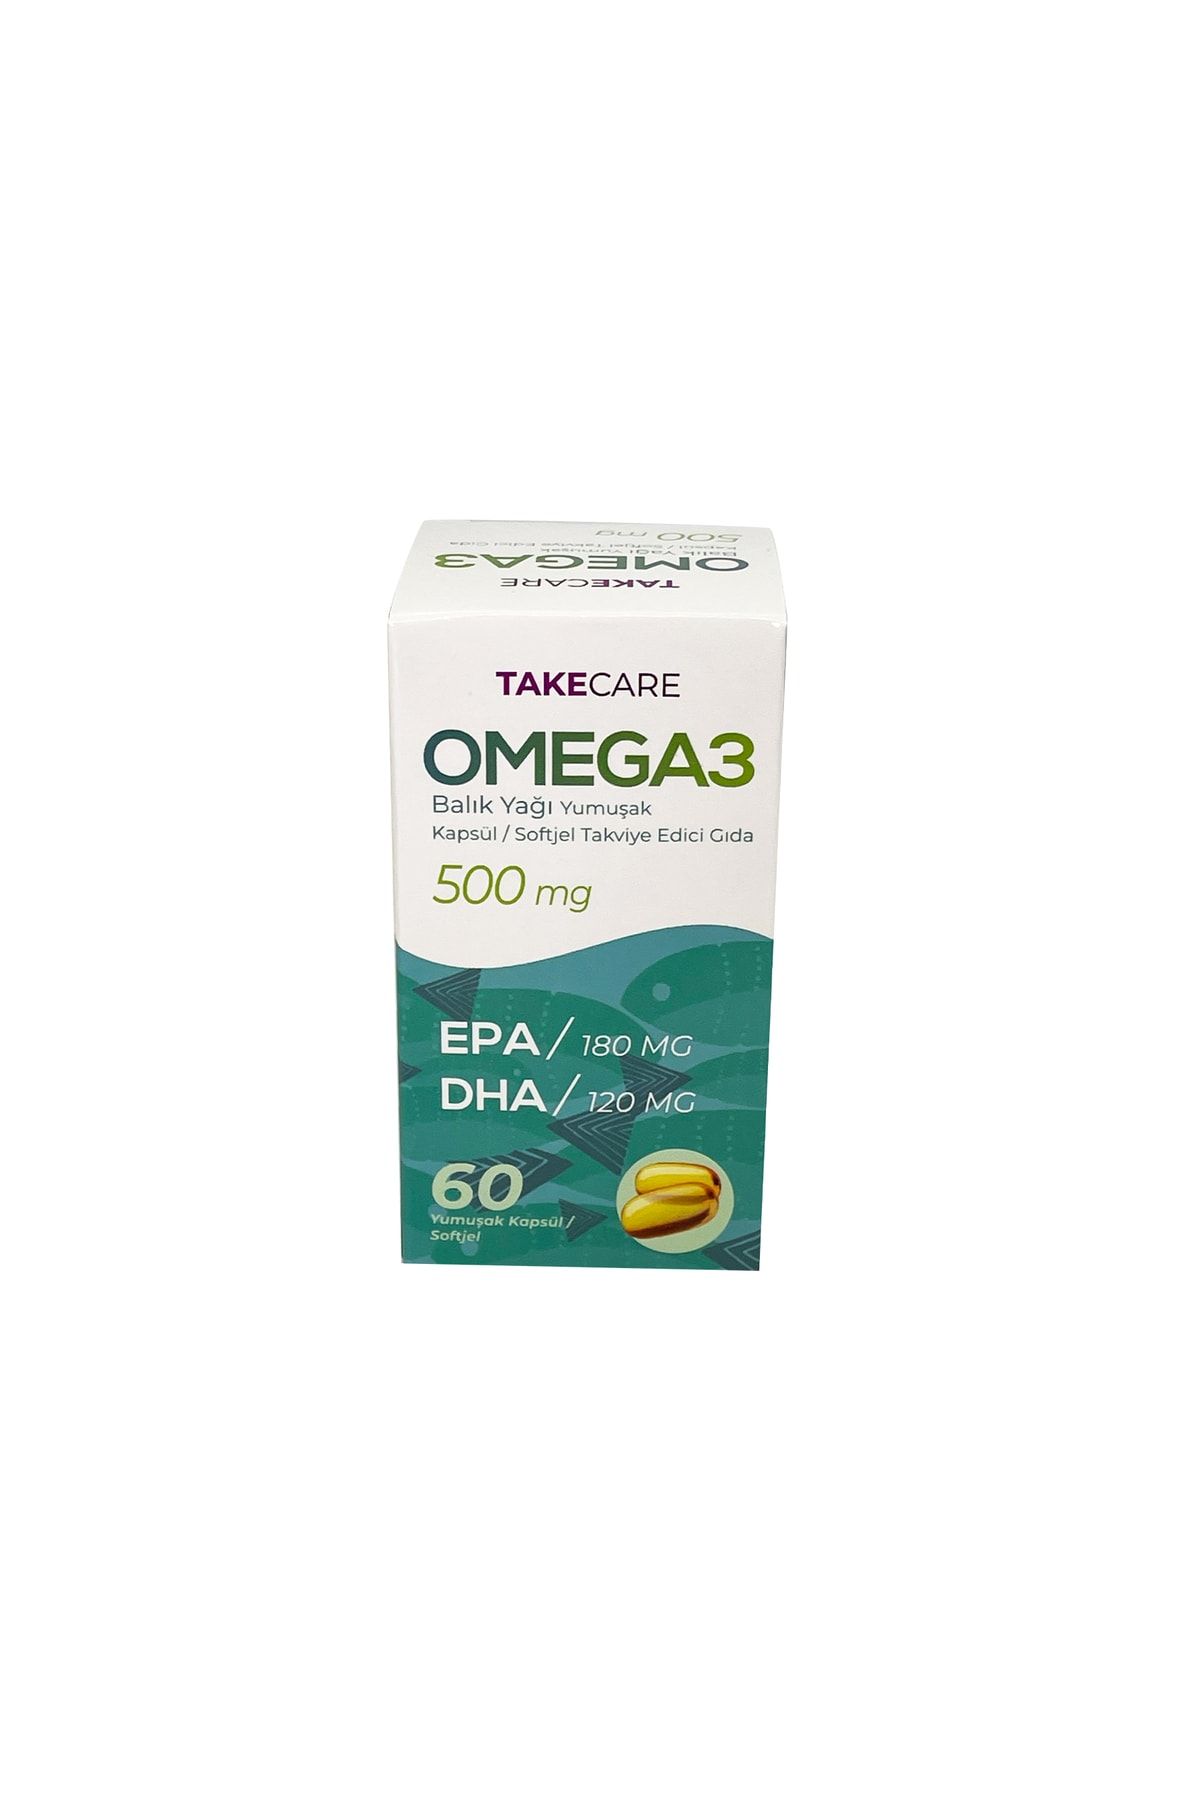 TakeCare Omega 3 Balık yağı fish oil 500 mg 60 adet Softjel Yumuşak Kapsül takviye gıda EPA DHA